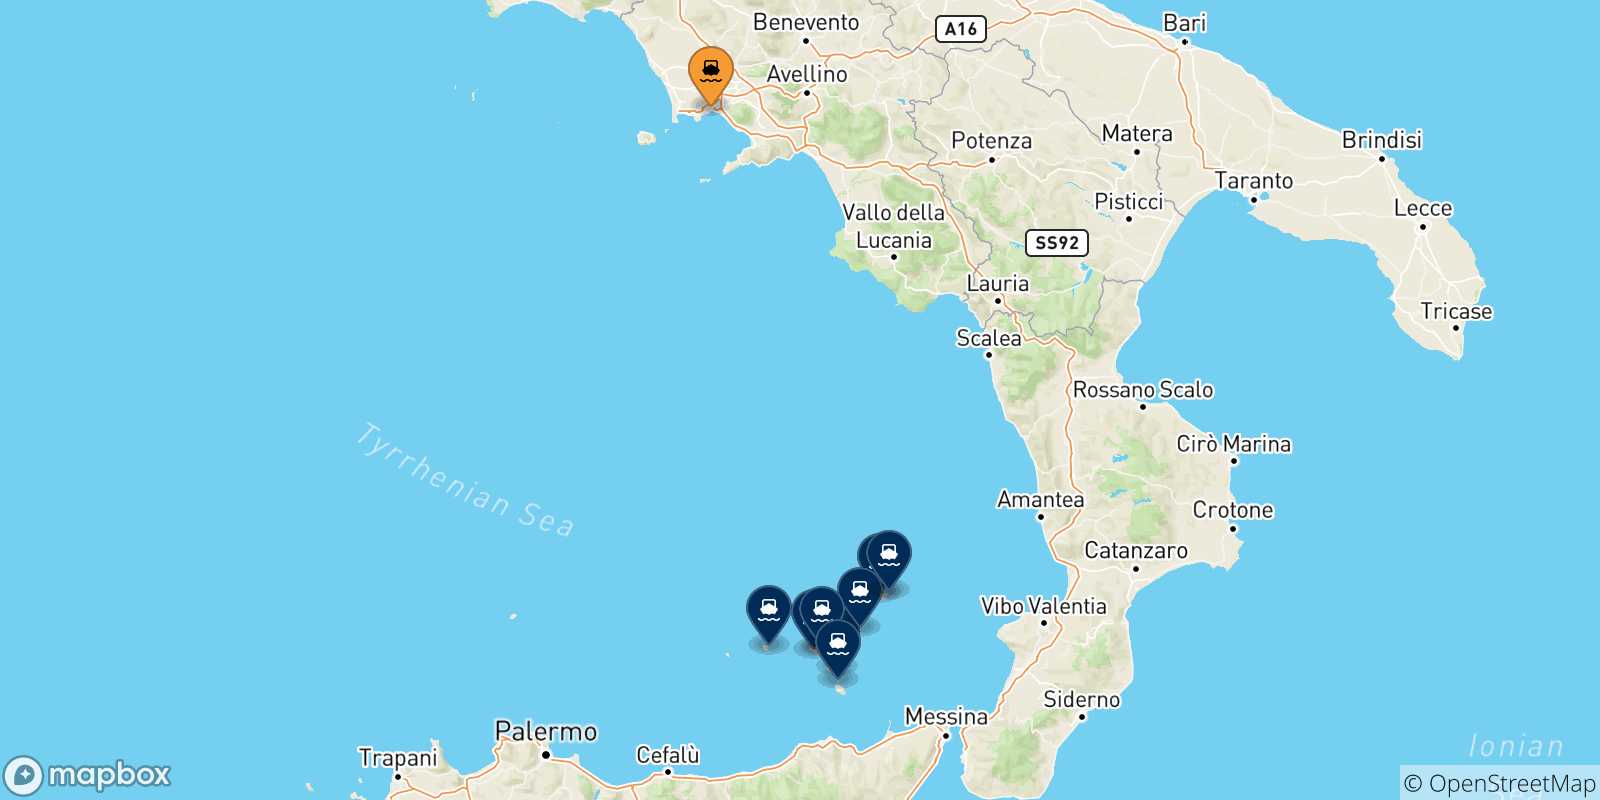 Mappa delle possibili rotte tra Napoli e le Isole Eolie